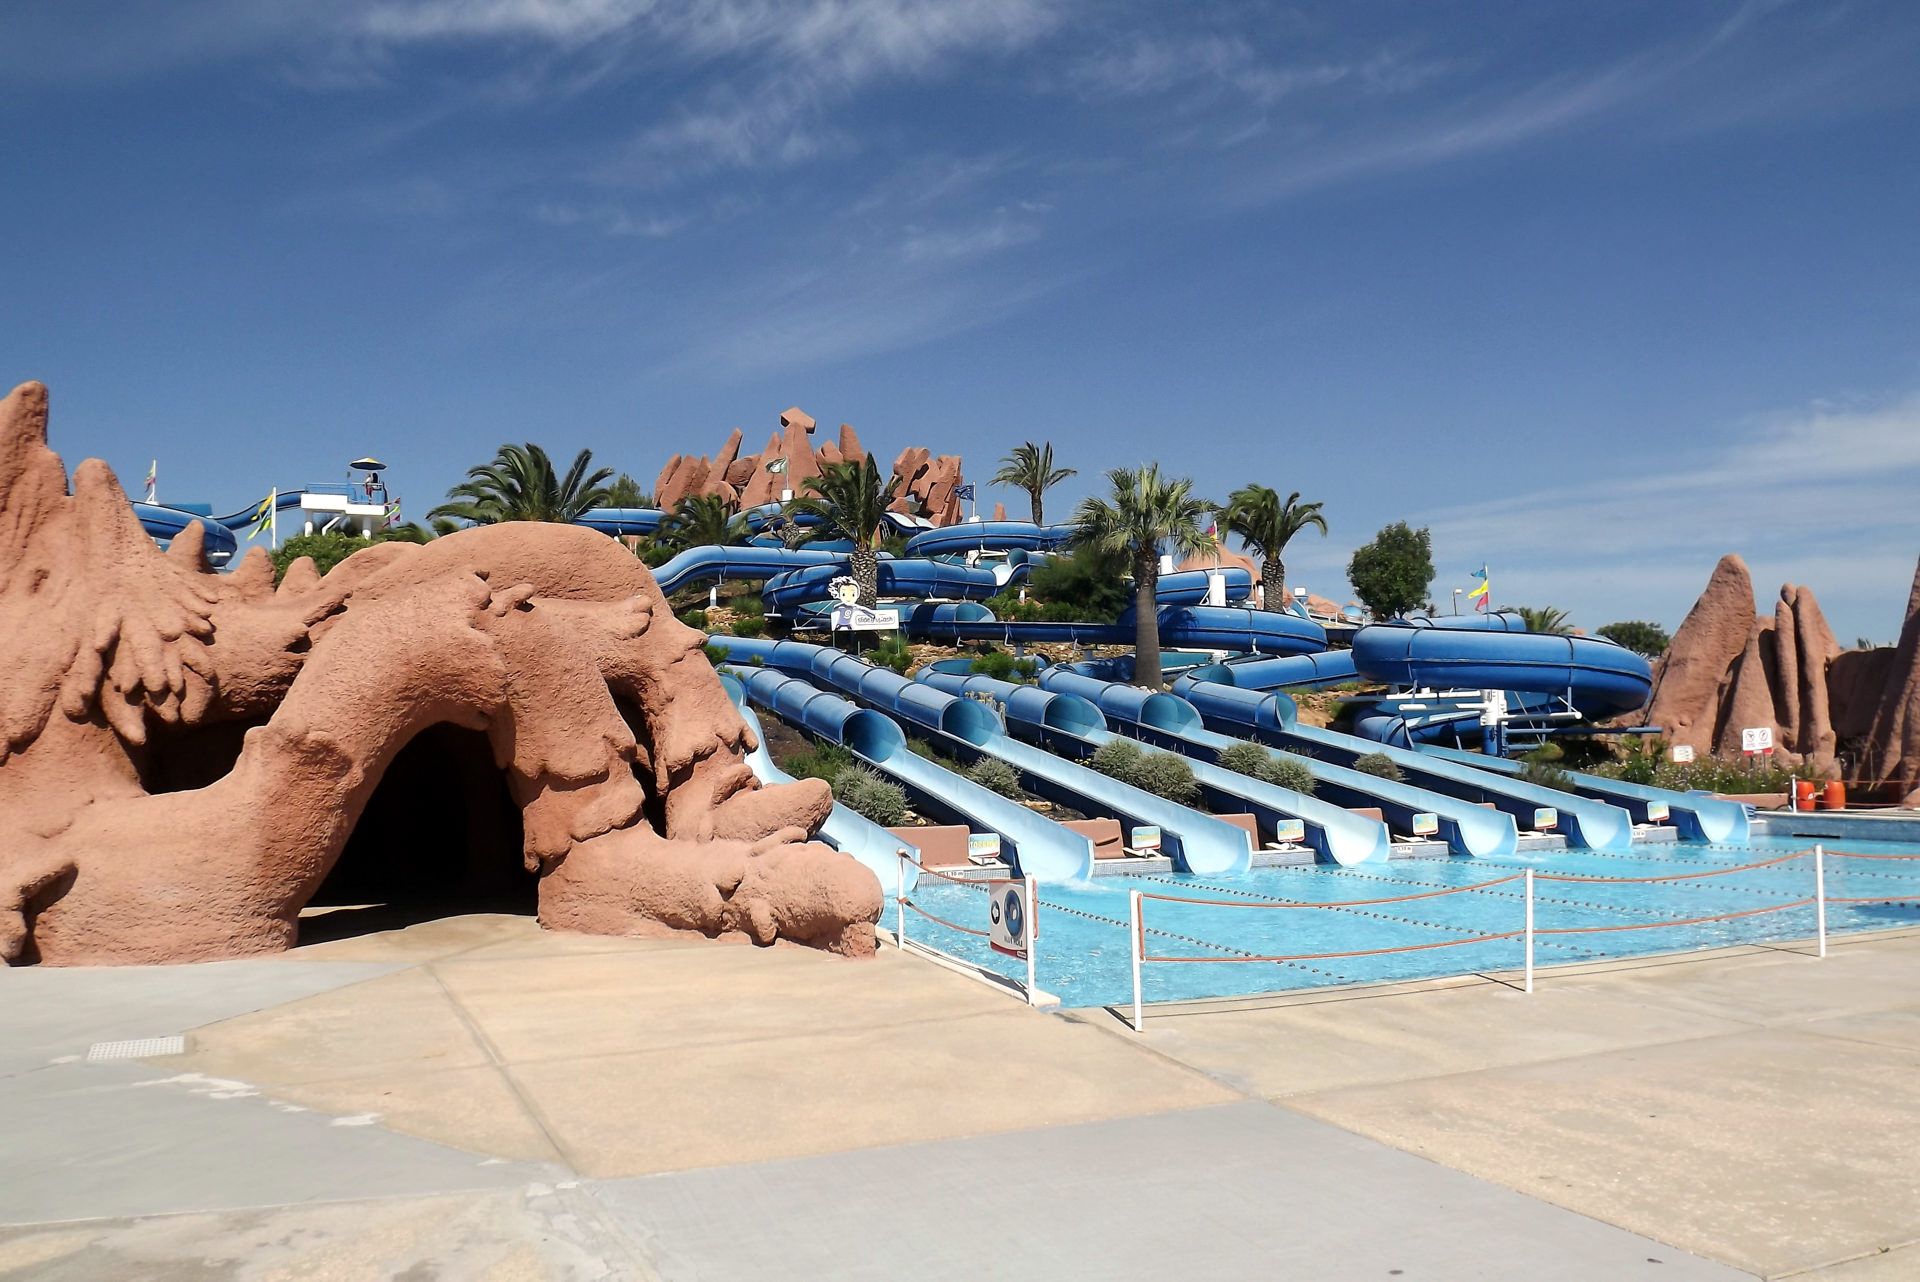 Slide & Splash • Water Park in Portugal • Themeparkblogger